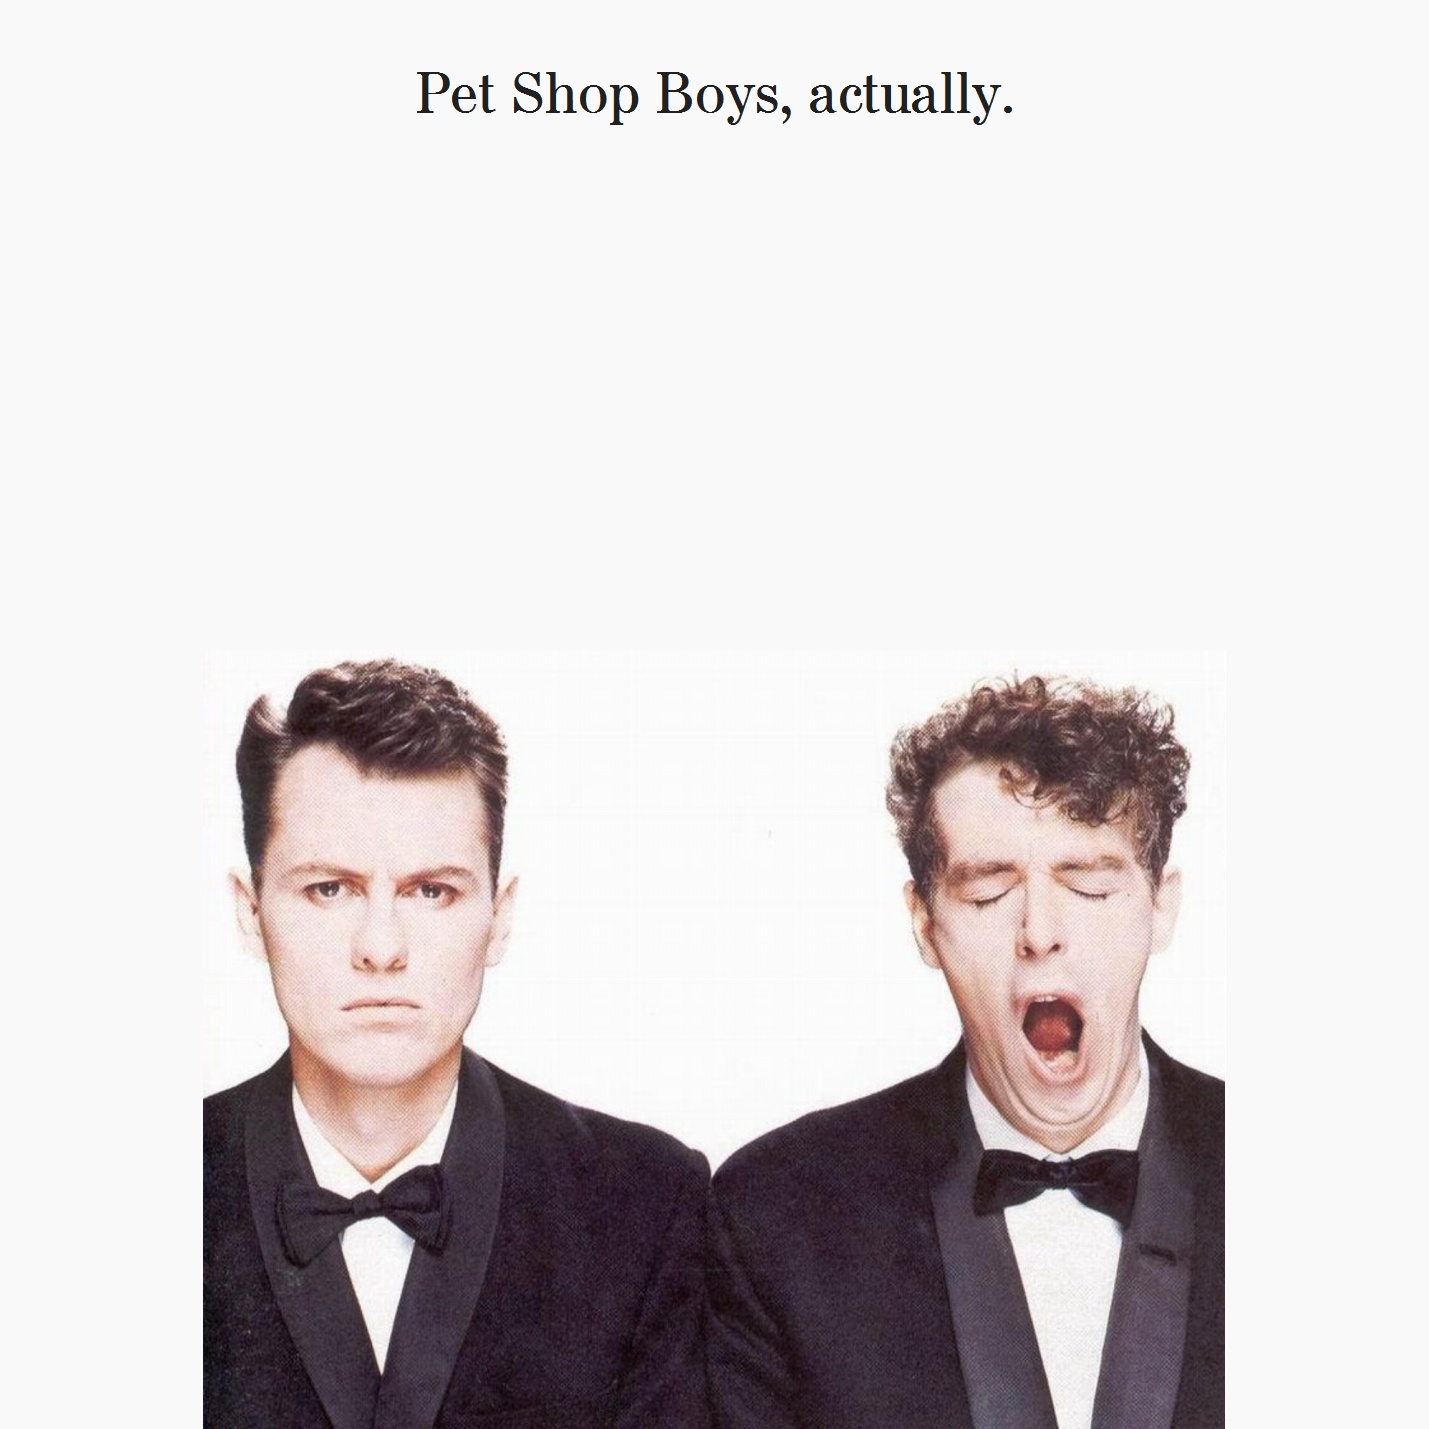 Pet Shop Boys: albums, songs, playlists